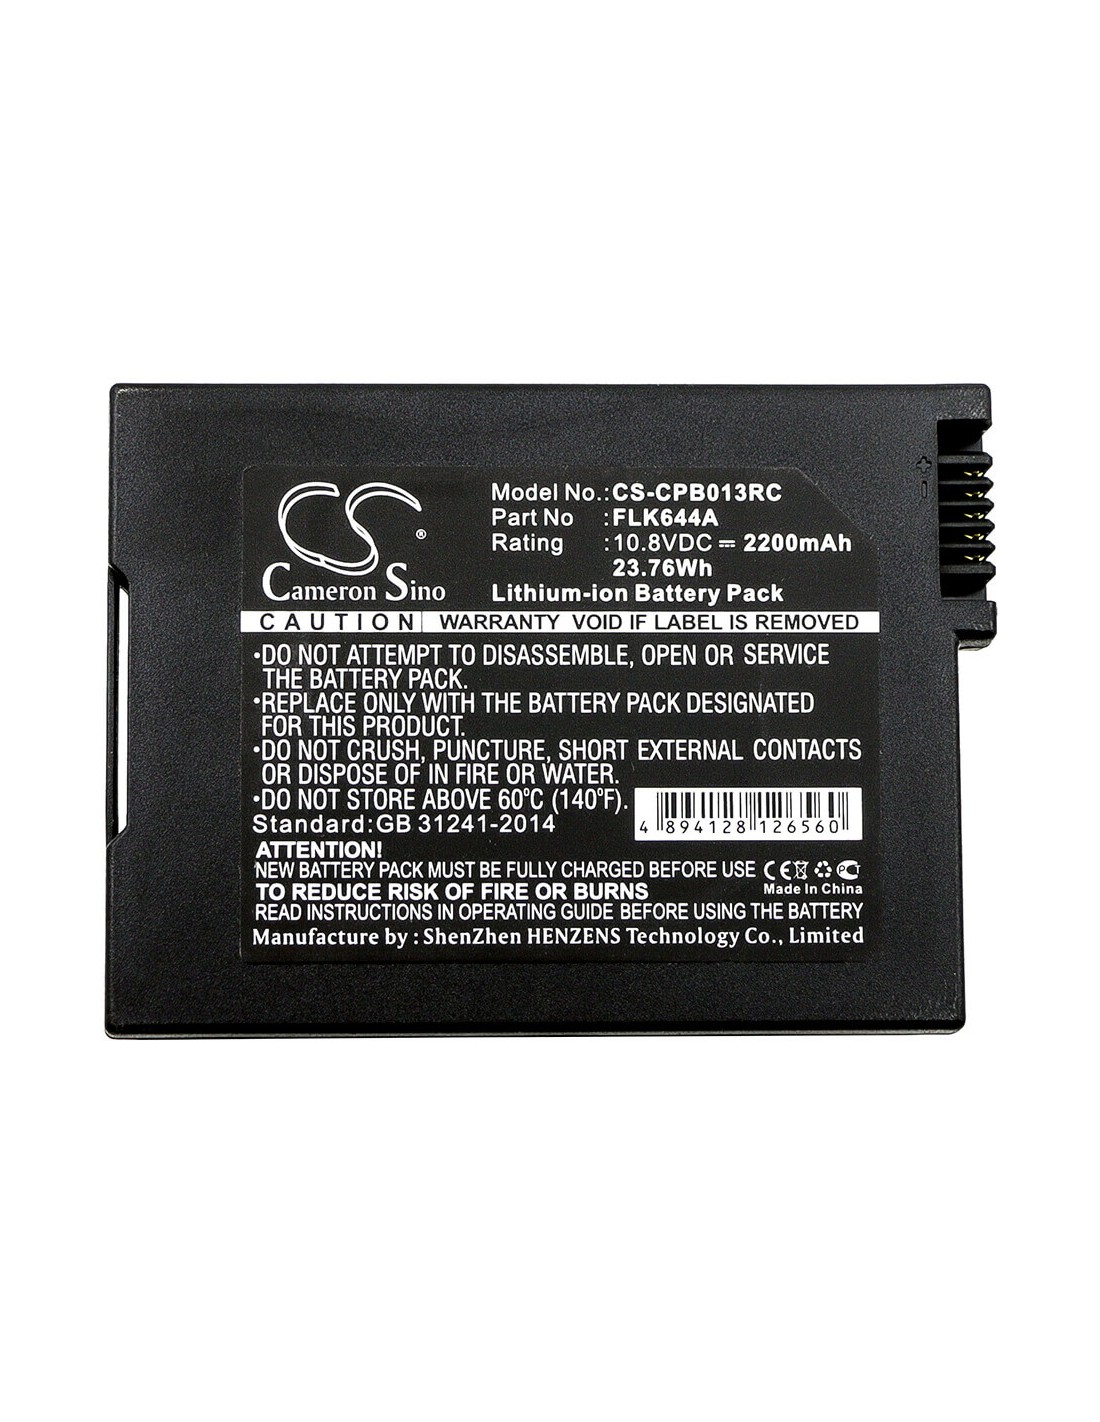 Battery for Cisco 4033435, Flk644a, Pb013, Smpcm1, Foxlink, Flk644a 10.8V, 2200mAh - 23.76Wh